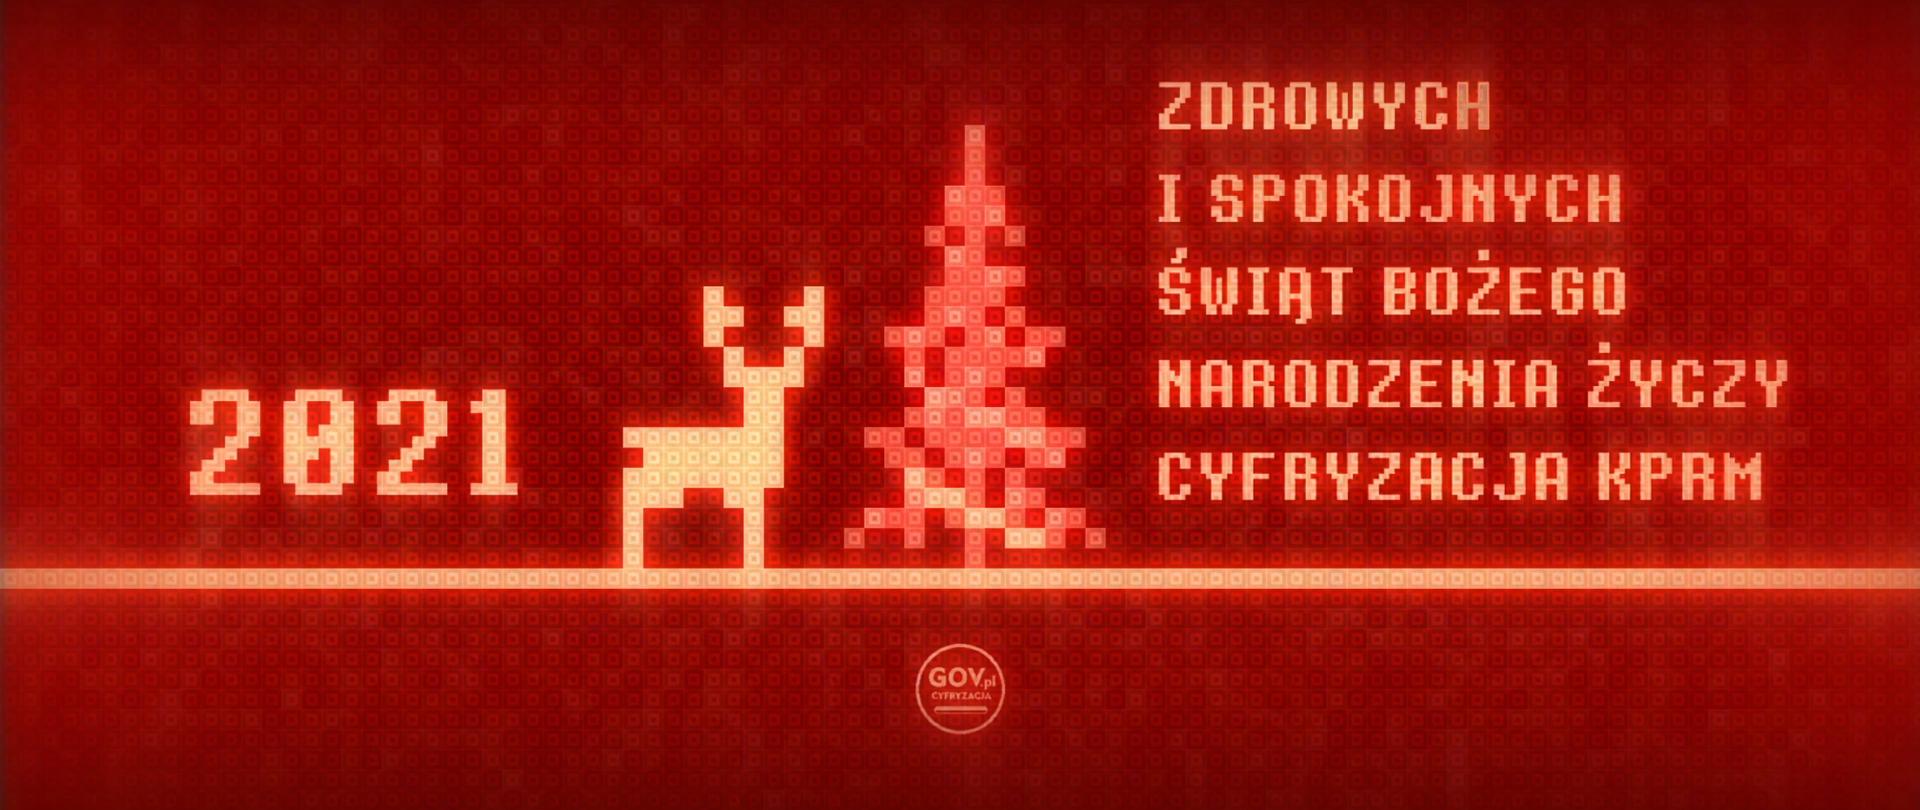 Grafika nawiązująca do 8-bitowej gry - czerwone tło, choinka, renifer, 2021 i tekst: Zdrowych i spokojnych Świąt Bożego Narodzenia życzy Cyfryzacja KPRM.